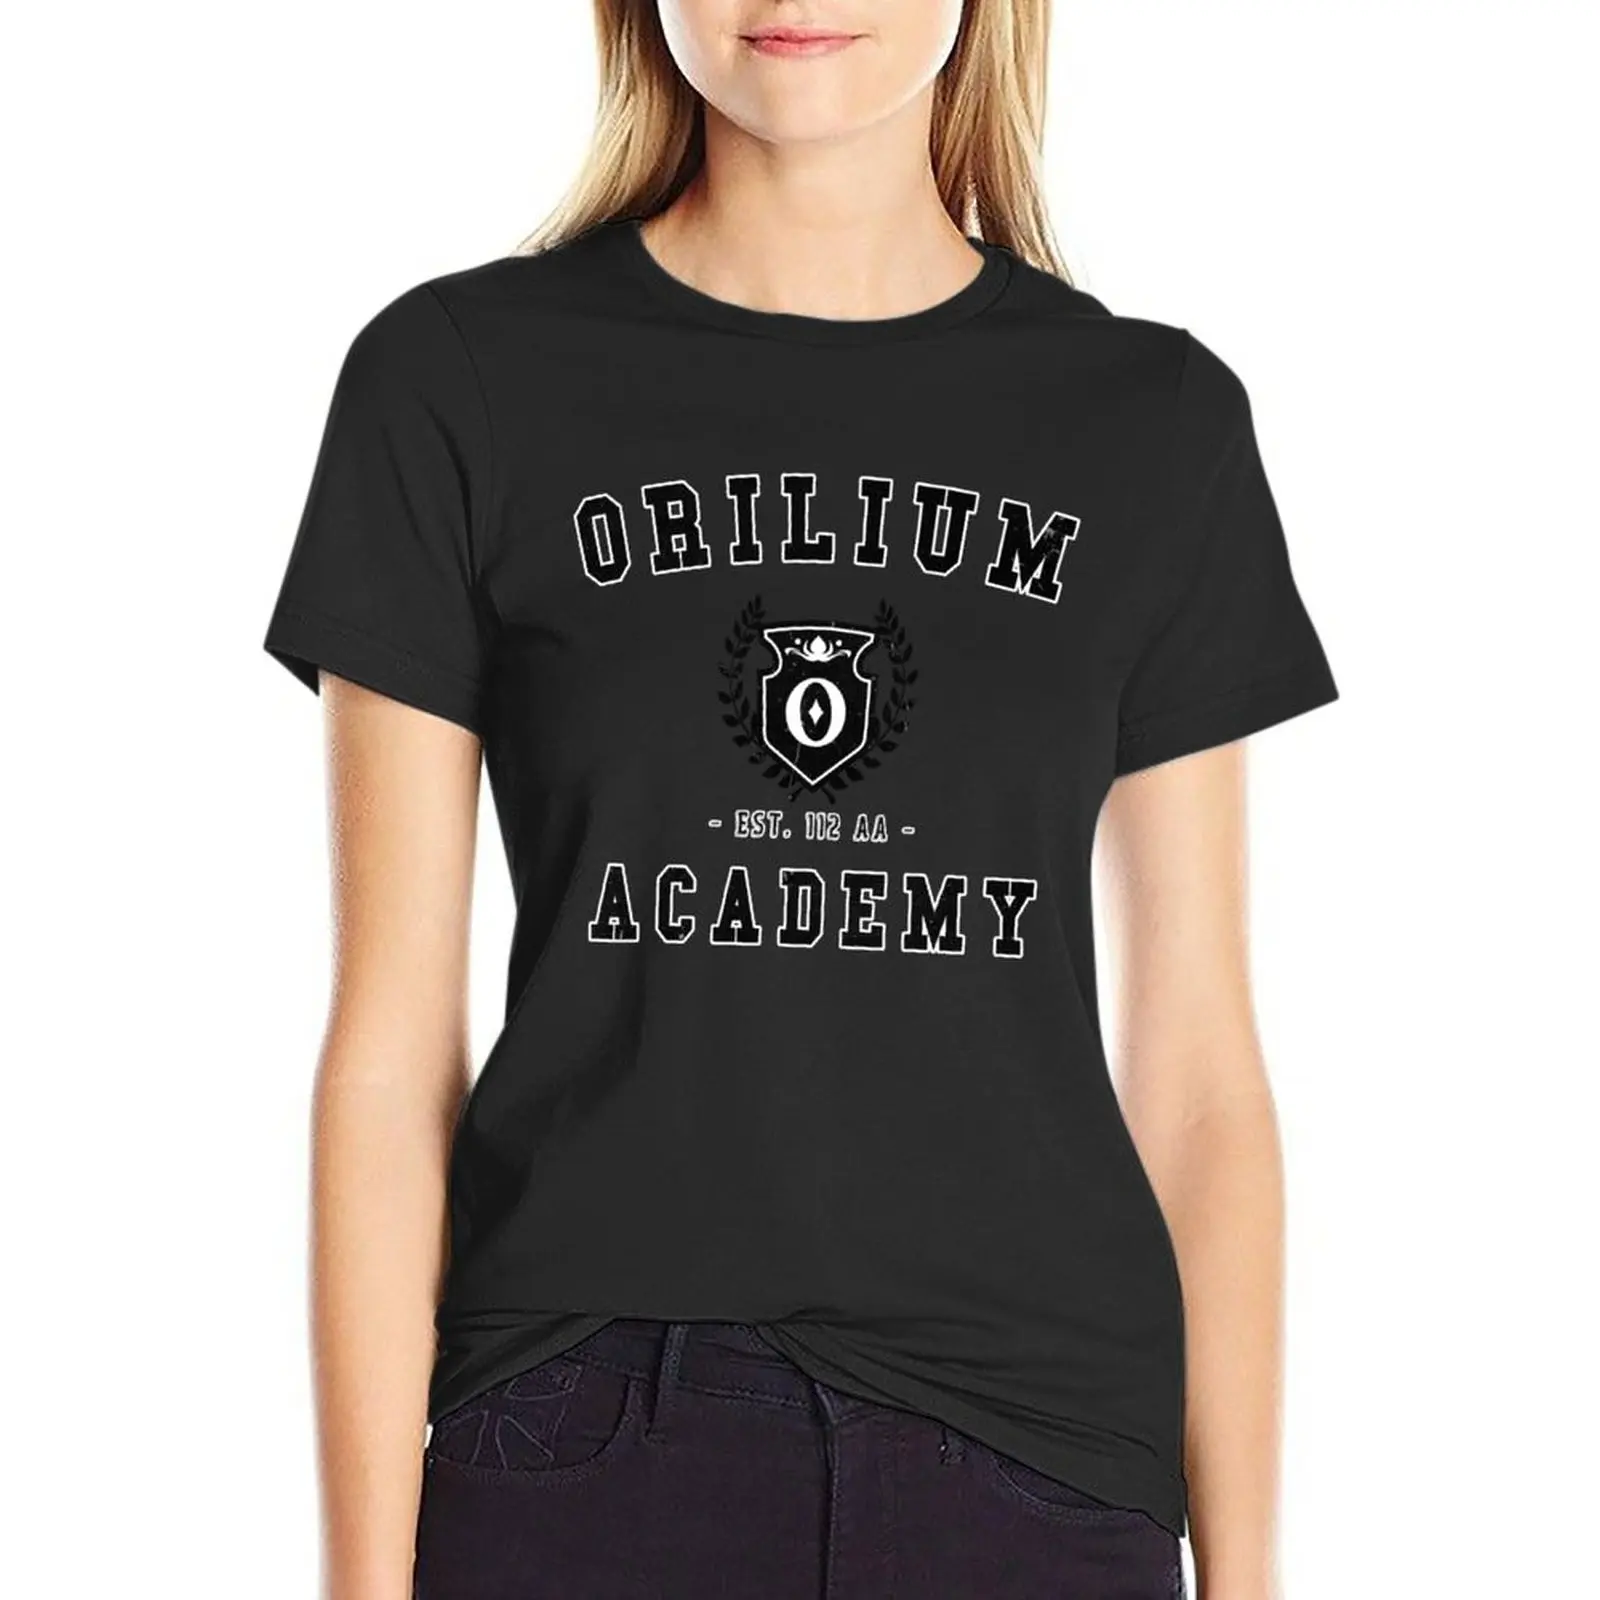 Футболка Orilium Academy, футболка оверсайз, эстетическая одежда, футболки для женщин, забавные футболки с графическим рисунком